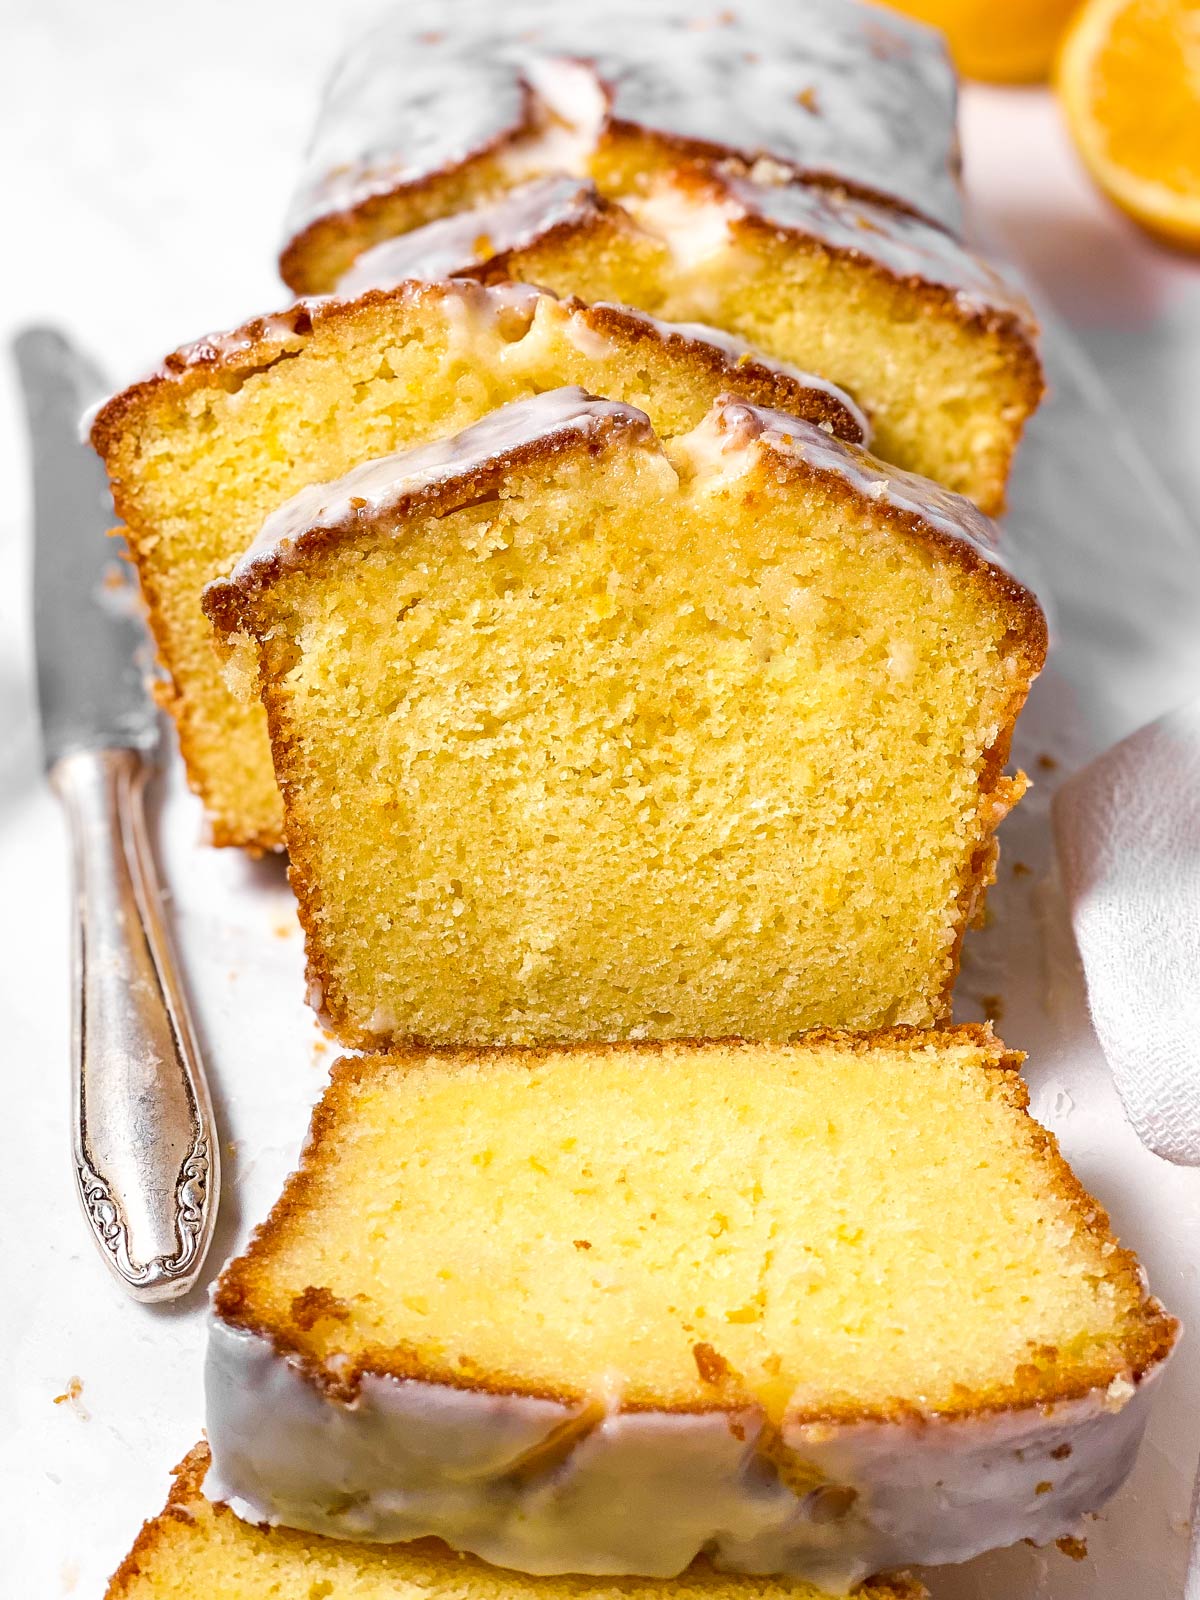 frontal view of sliced lemon loaf cake